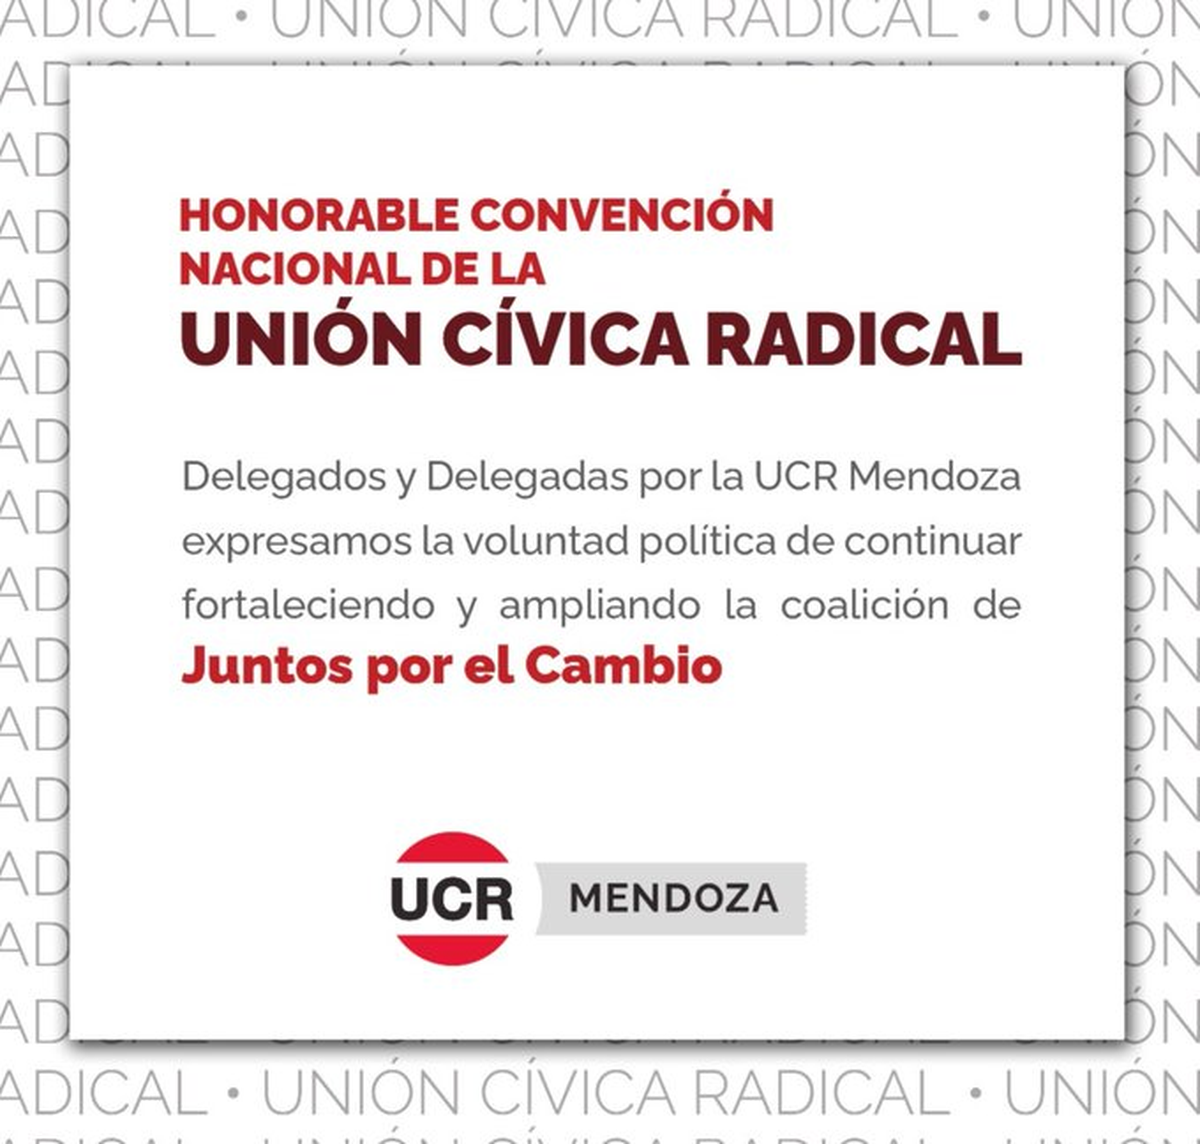 El comunicado de la UCR Mendoza antes de la Convención.